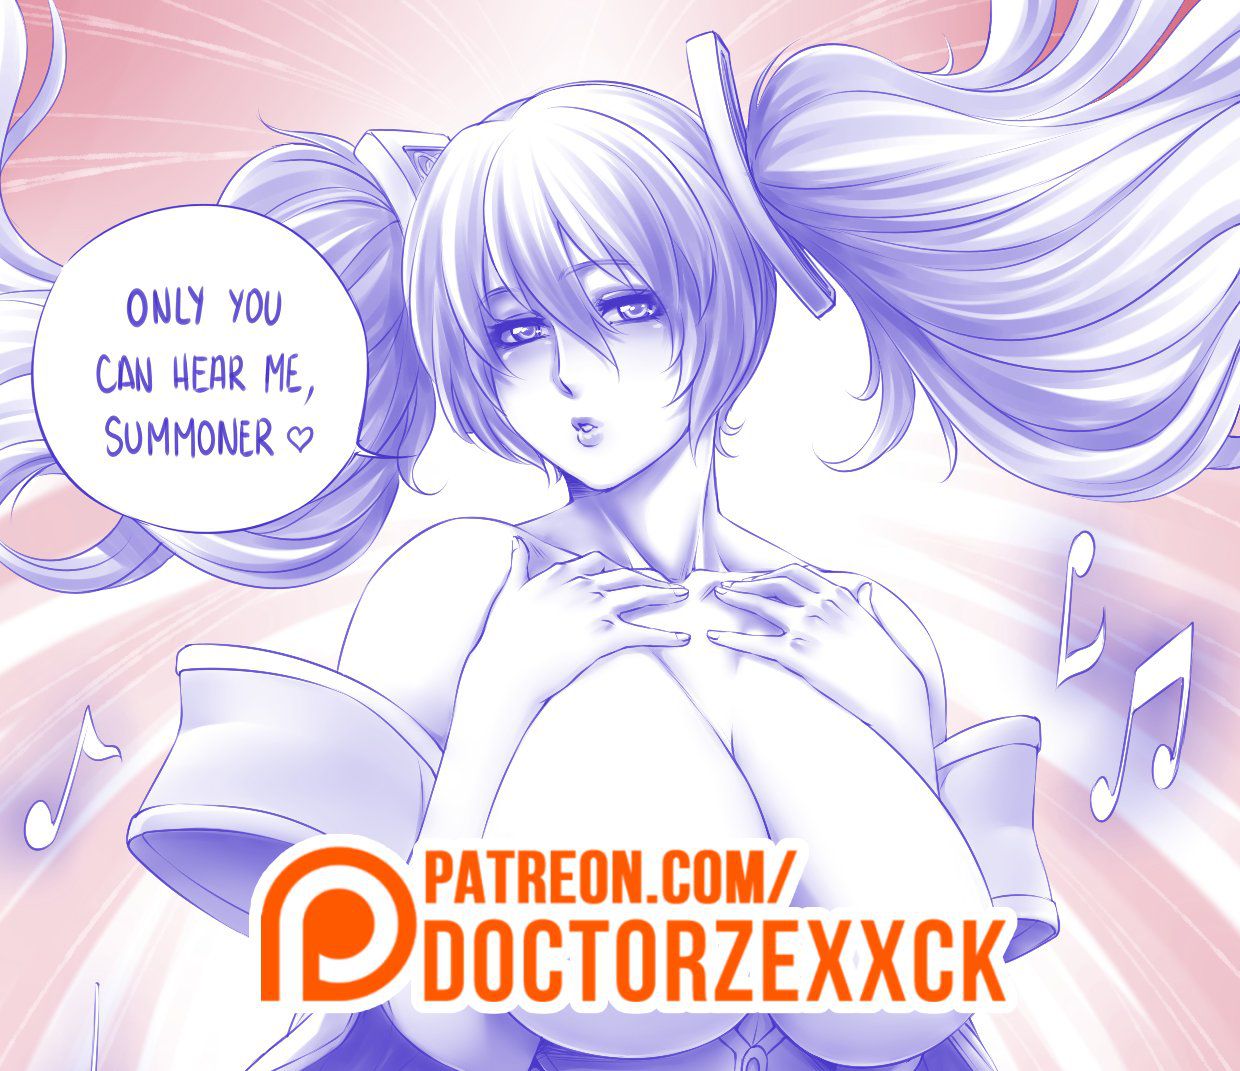 Artist - Doctor Zexxck / Dr. Zexxck 181